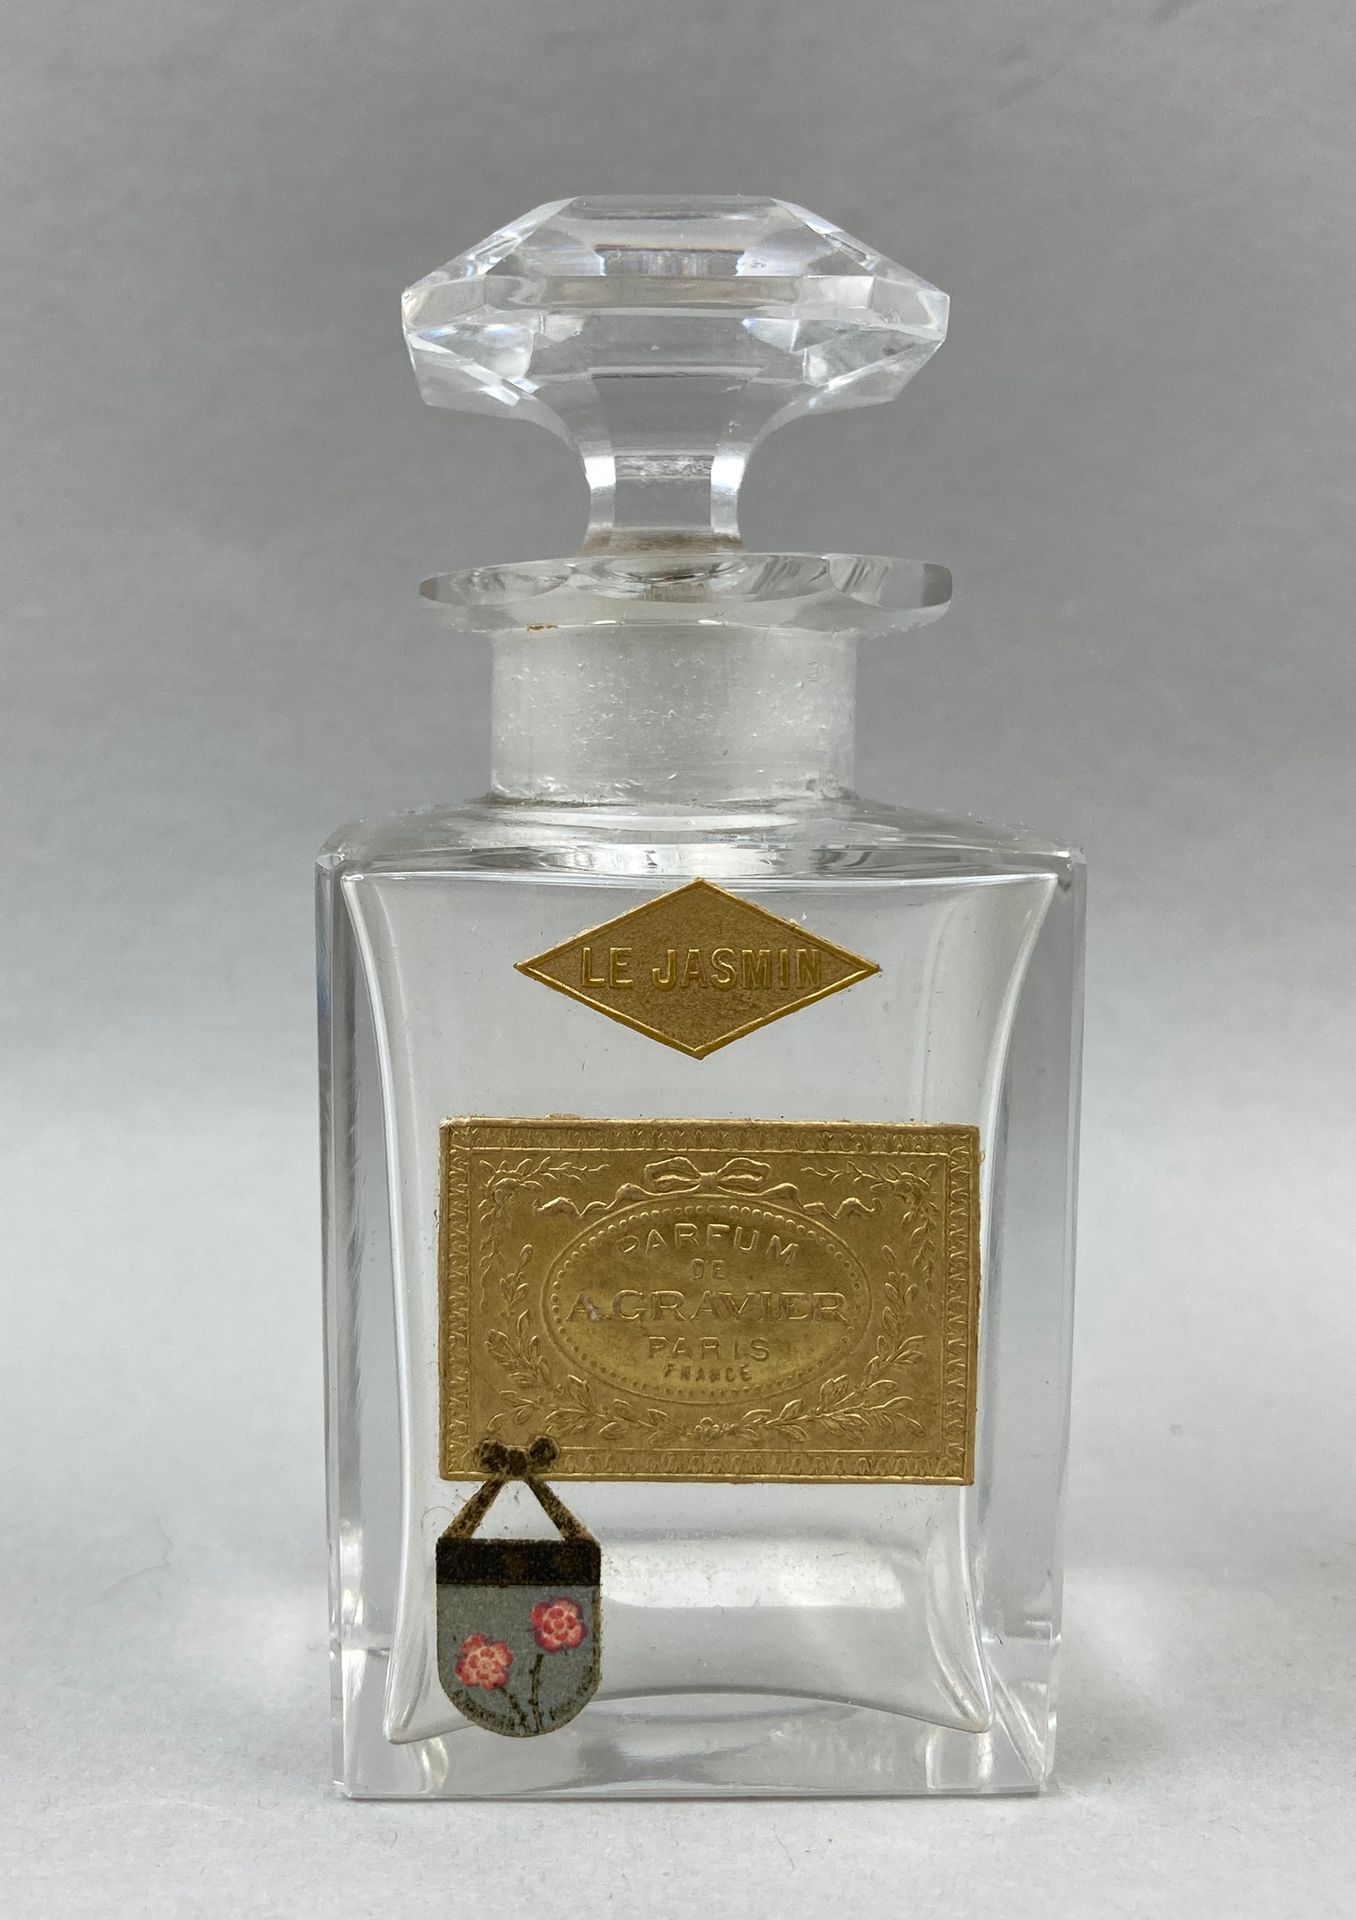 Null A. GRAVIER "Le jasmin" (Der Jasmin).

Quadratischer Flakon aus Kristall, zw&hellip;